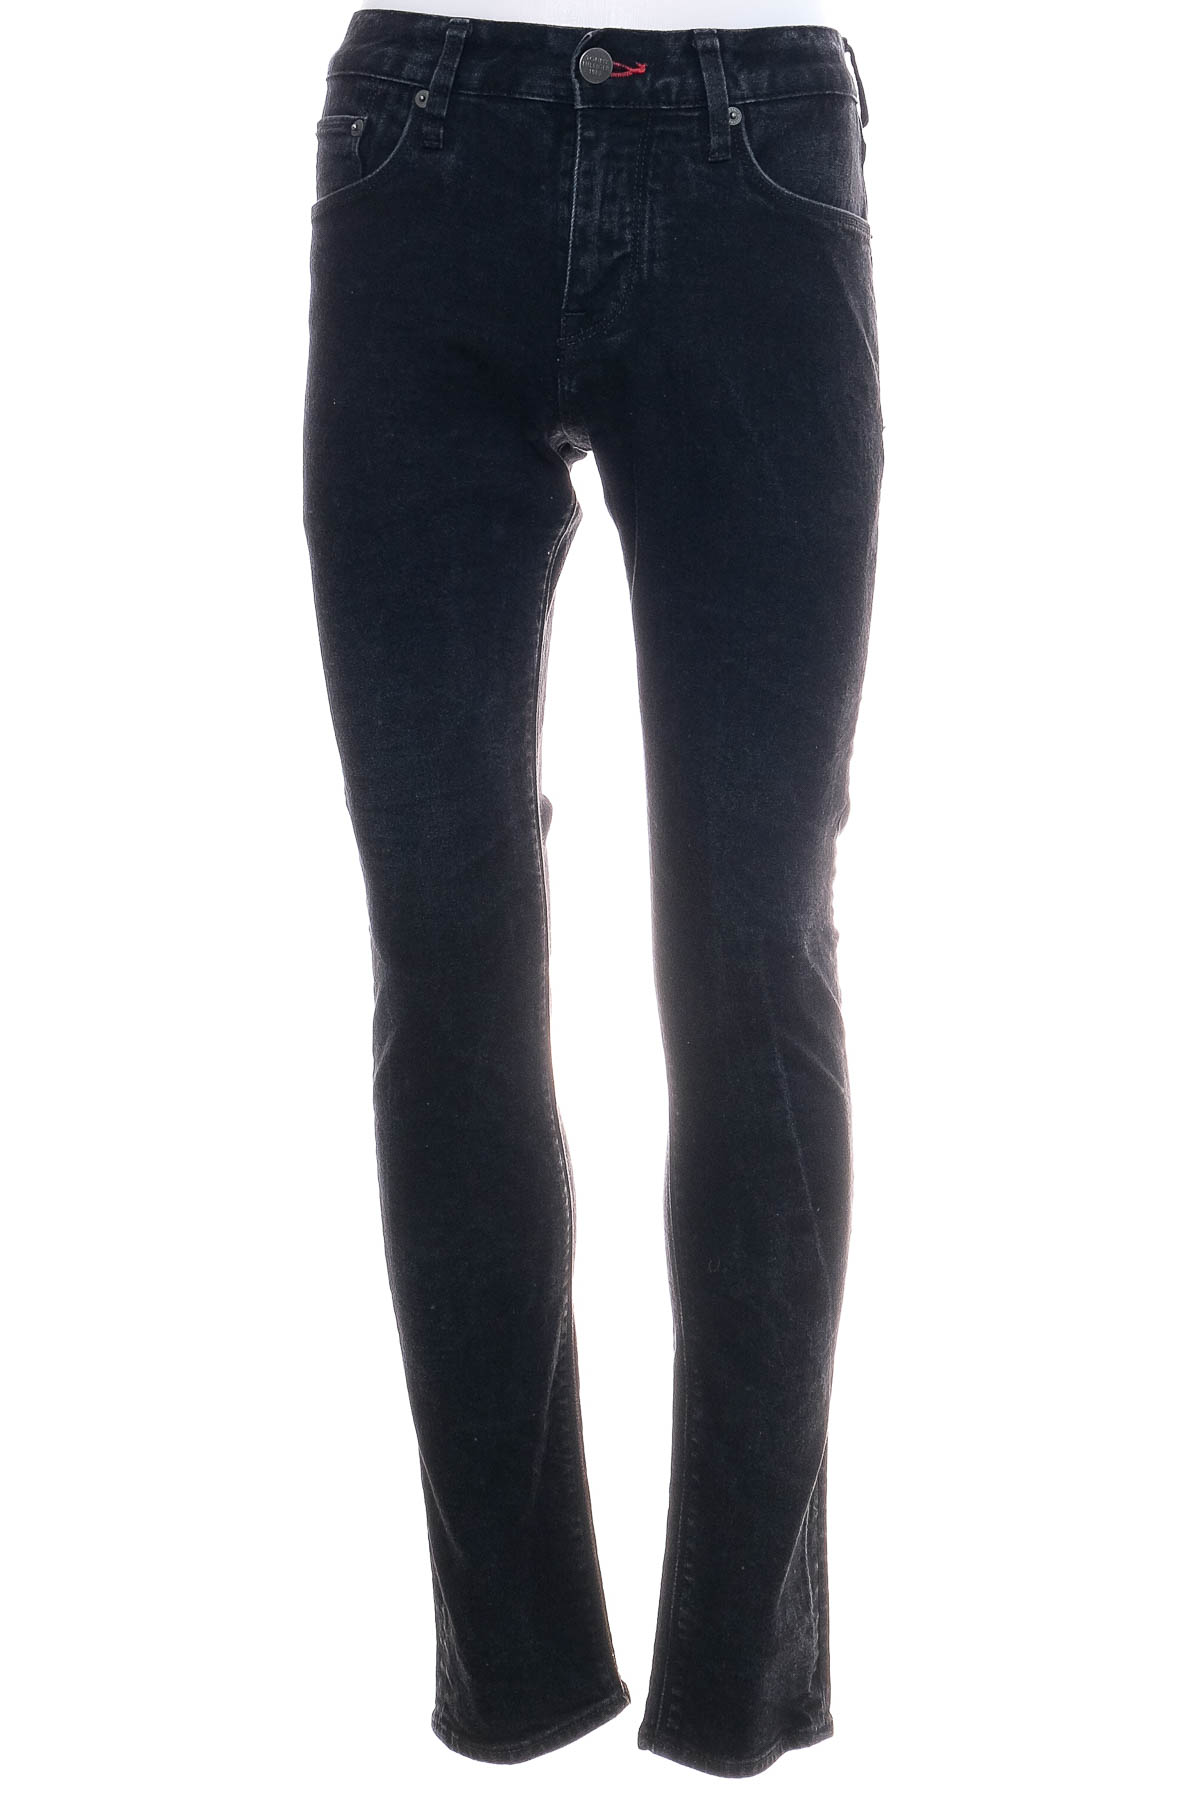 Jeans pentru bărbăți - TOMMY HILFIGER - 0